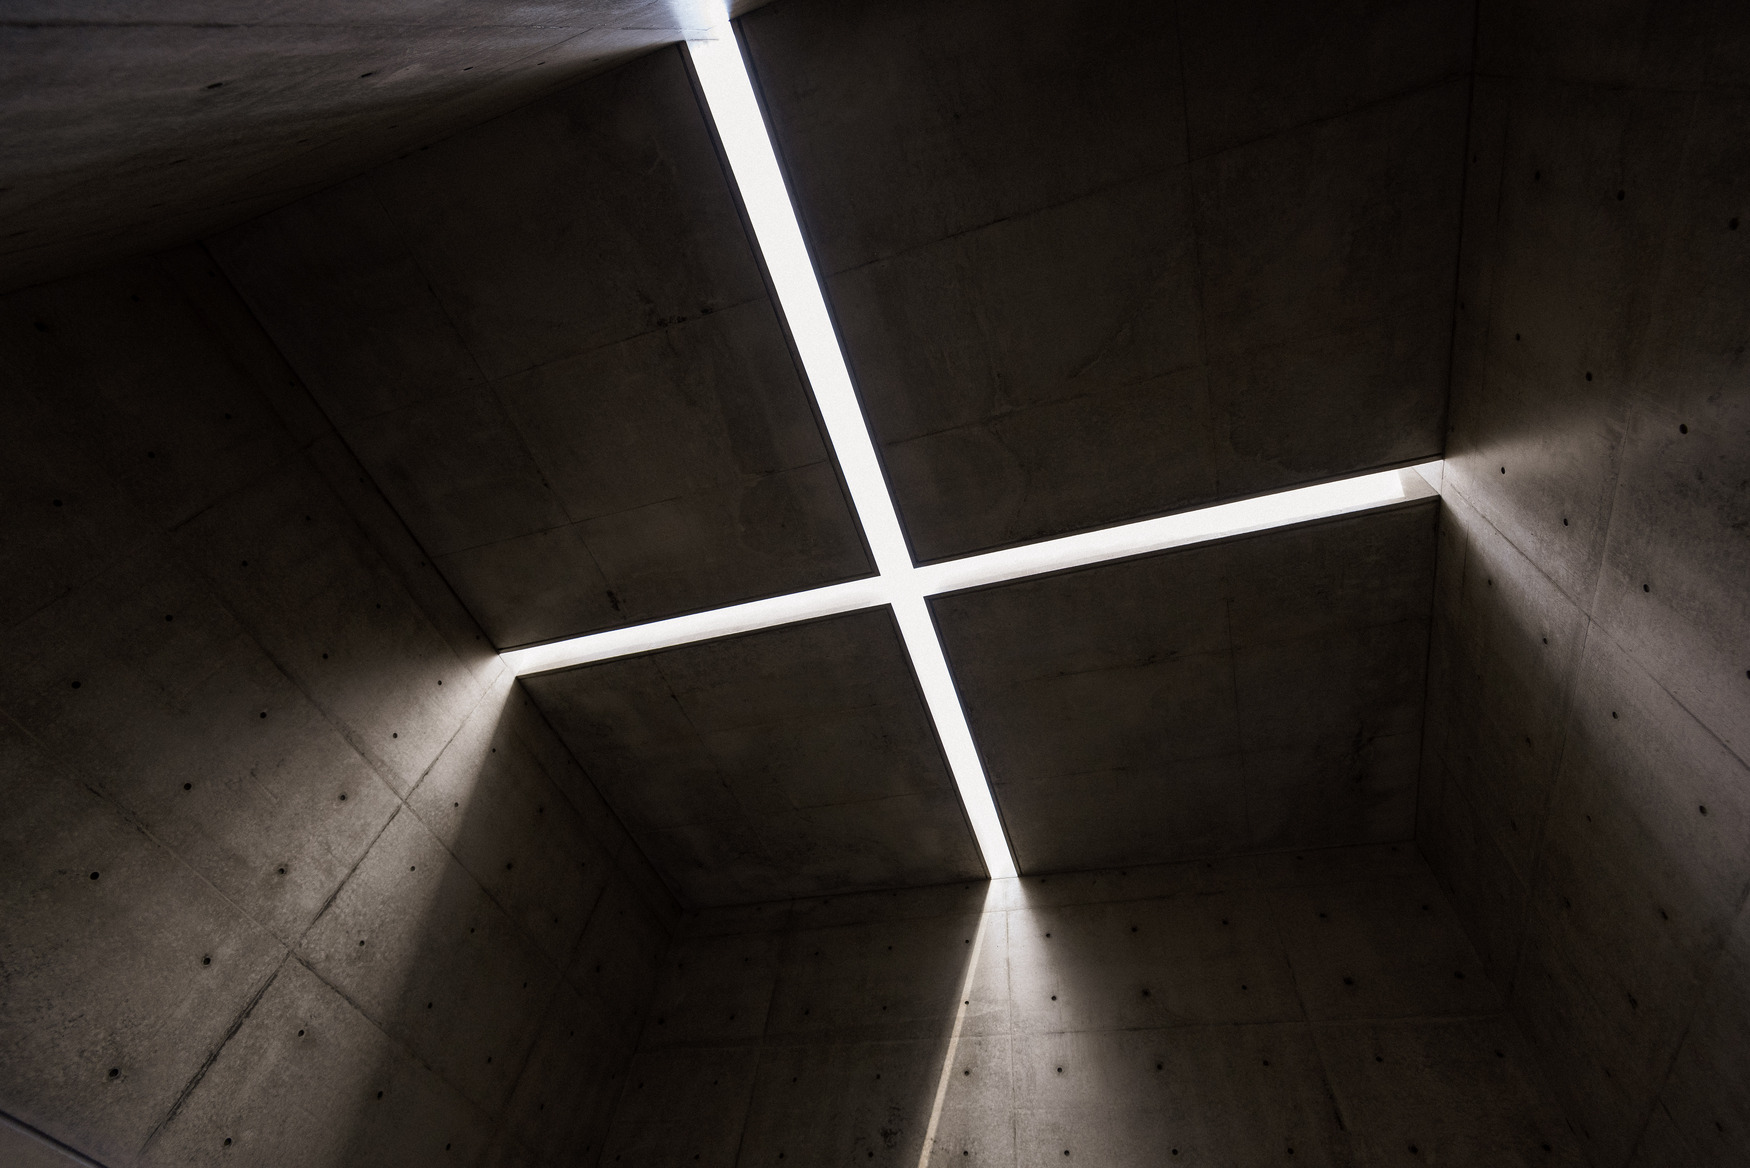 以純粹的清水模空間承接十字天光 的 Space of Light，是安藤忠雄在韓國的最新作品。